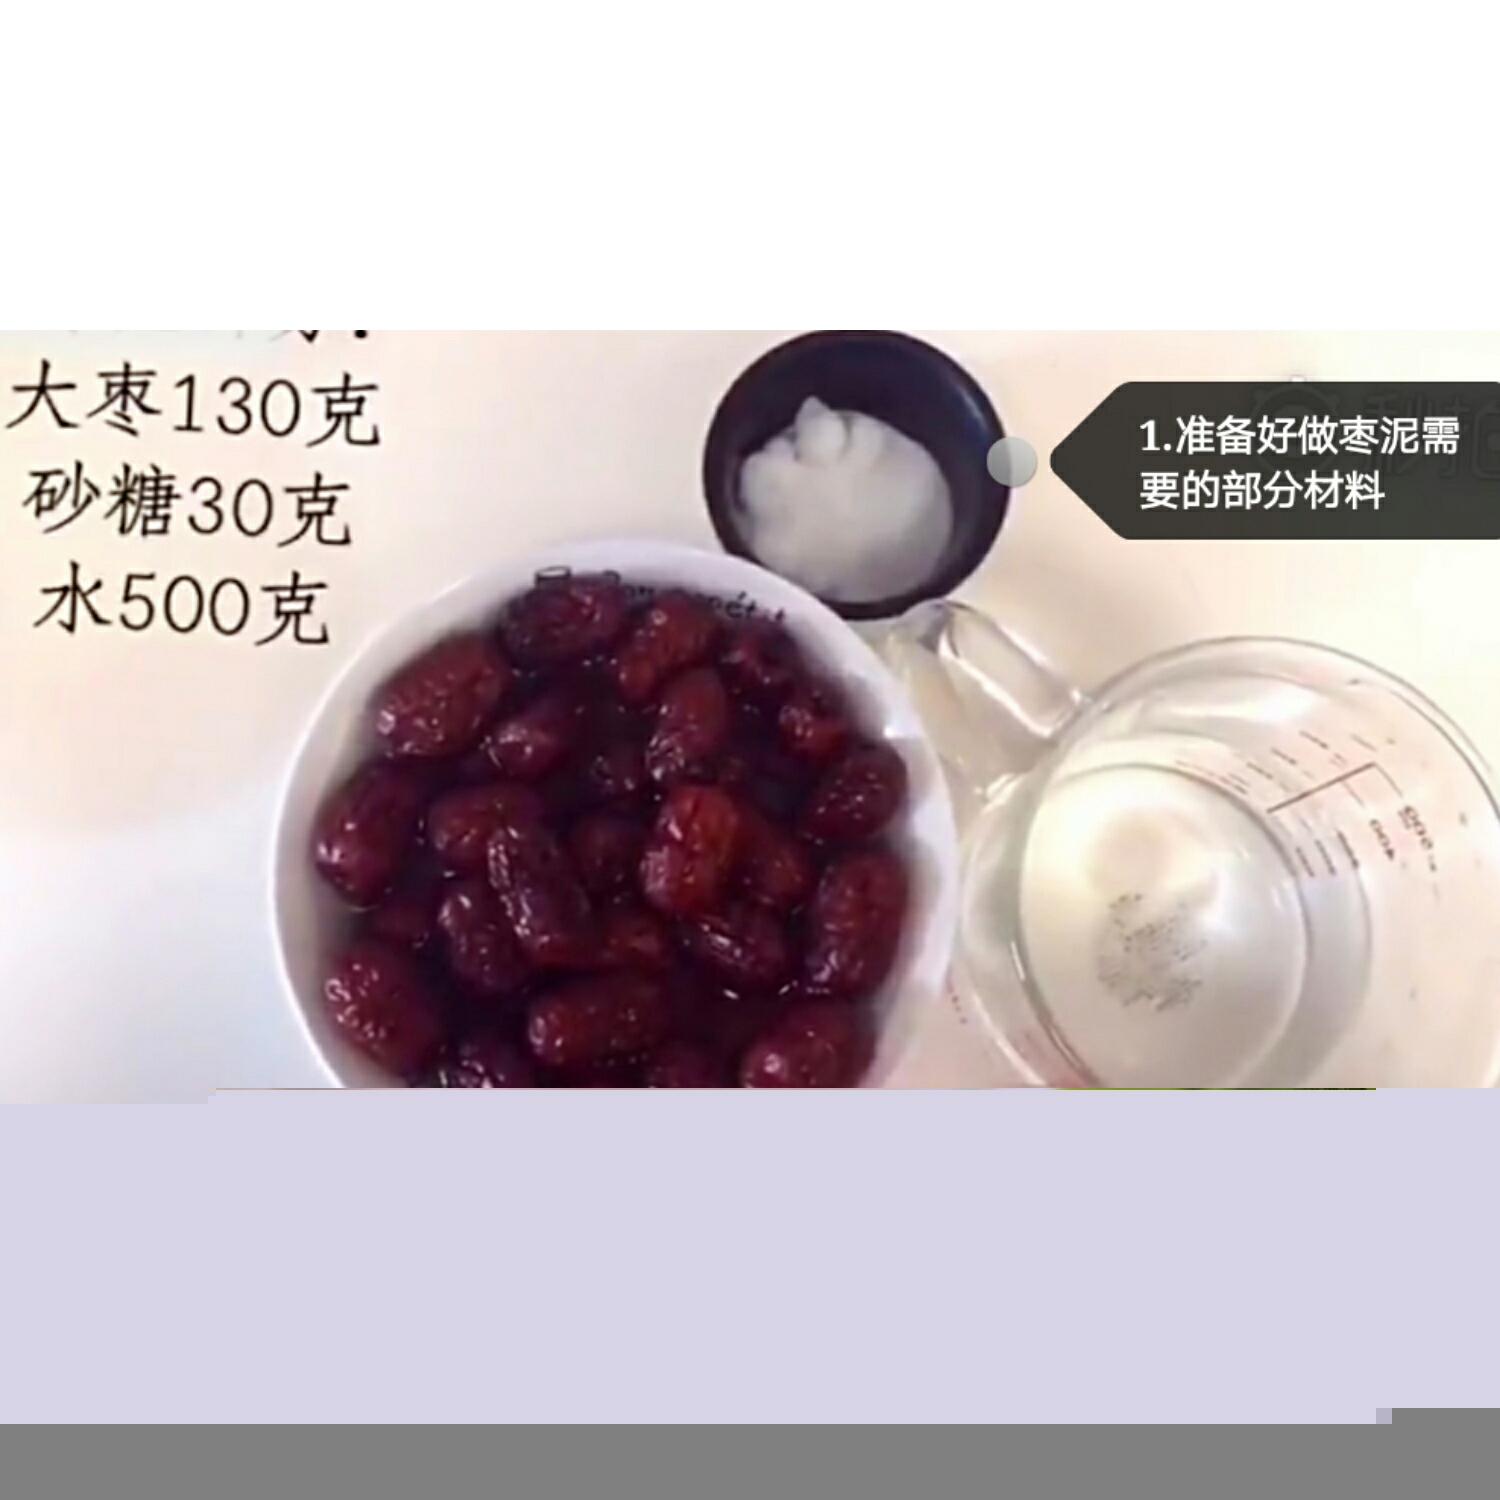 电饭锅枣泥蛋糕的做法 步骤7